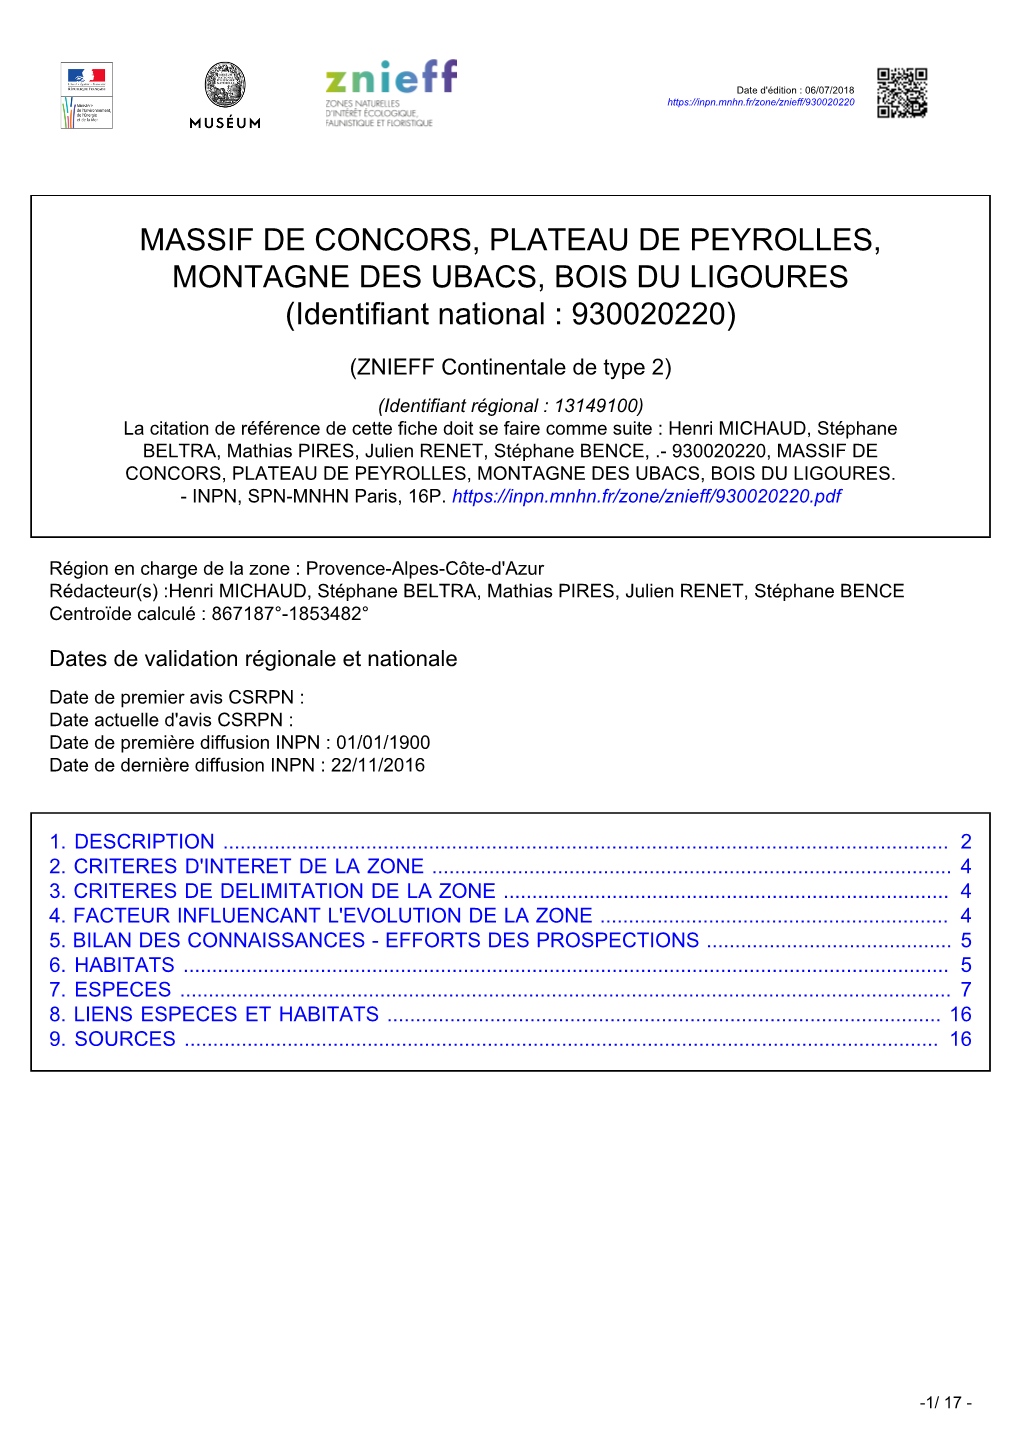 MASSIF DE CONCORS, PLATEAU DE PEYROLLES, MONTAGNE DES UBACS, BOIS DU LIGOURES (Identifiant National : 930020220)